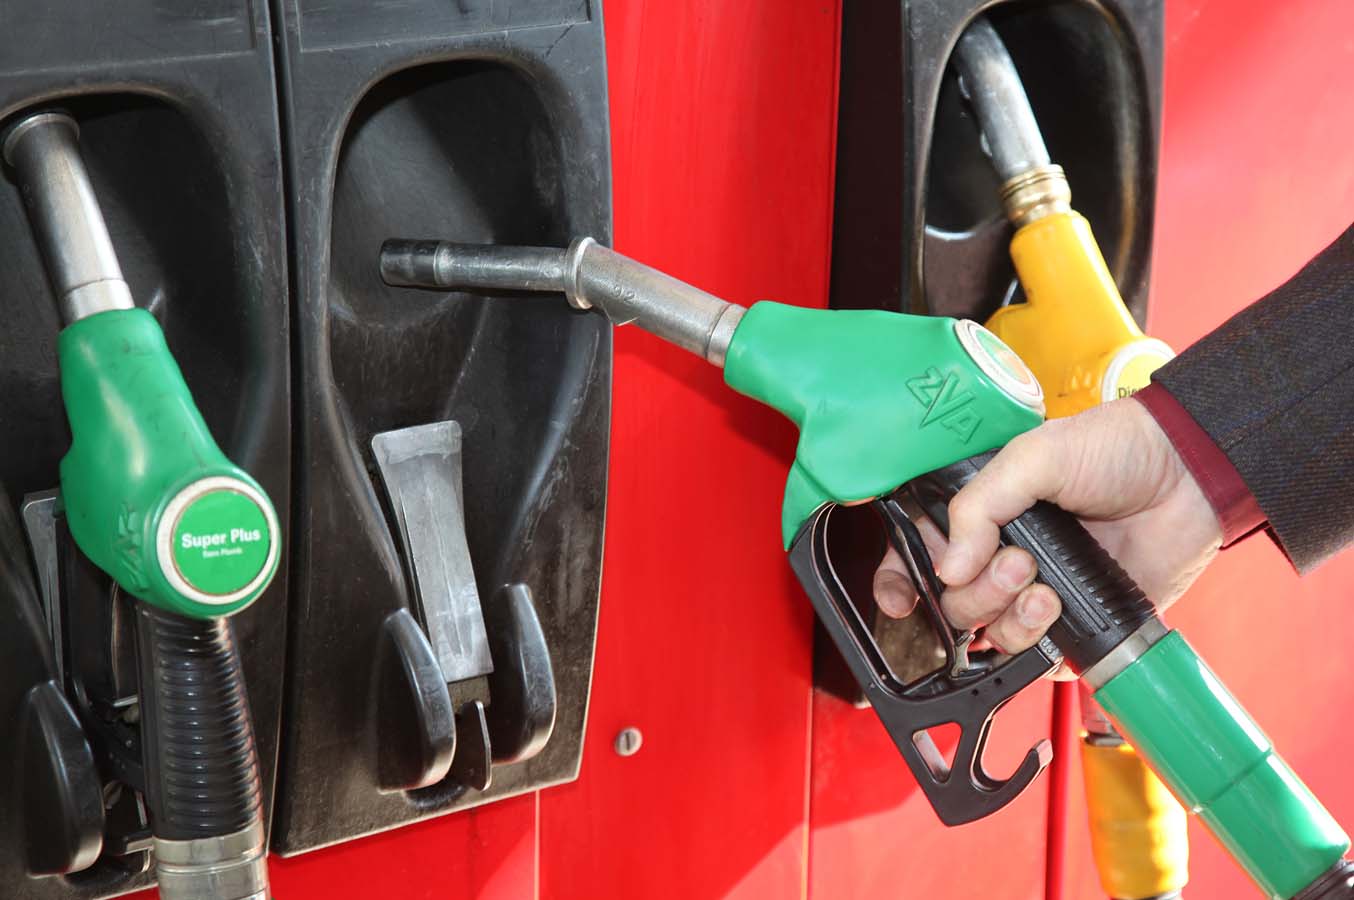     Le prix des carburants baisse, celui de la bouteille de gaz augmente 

